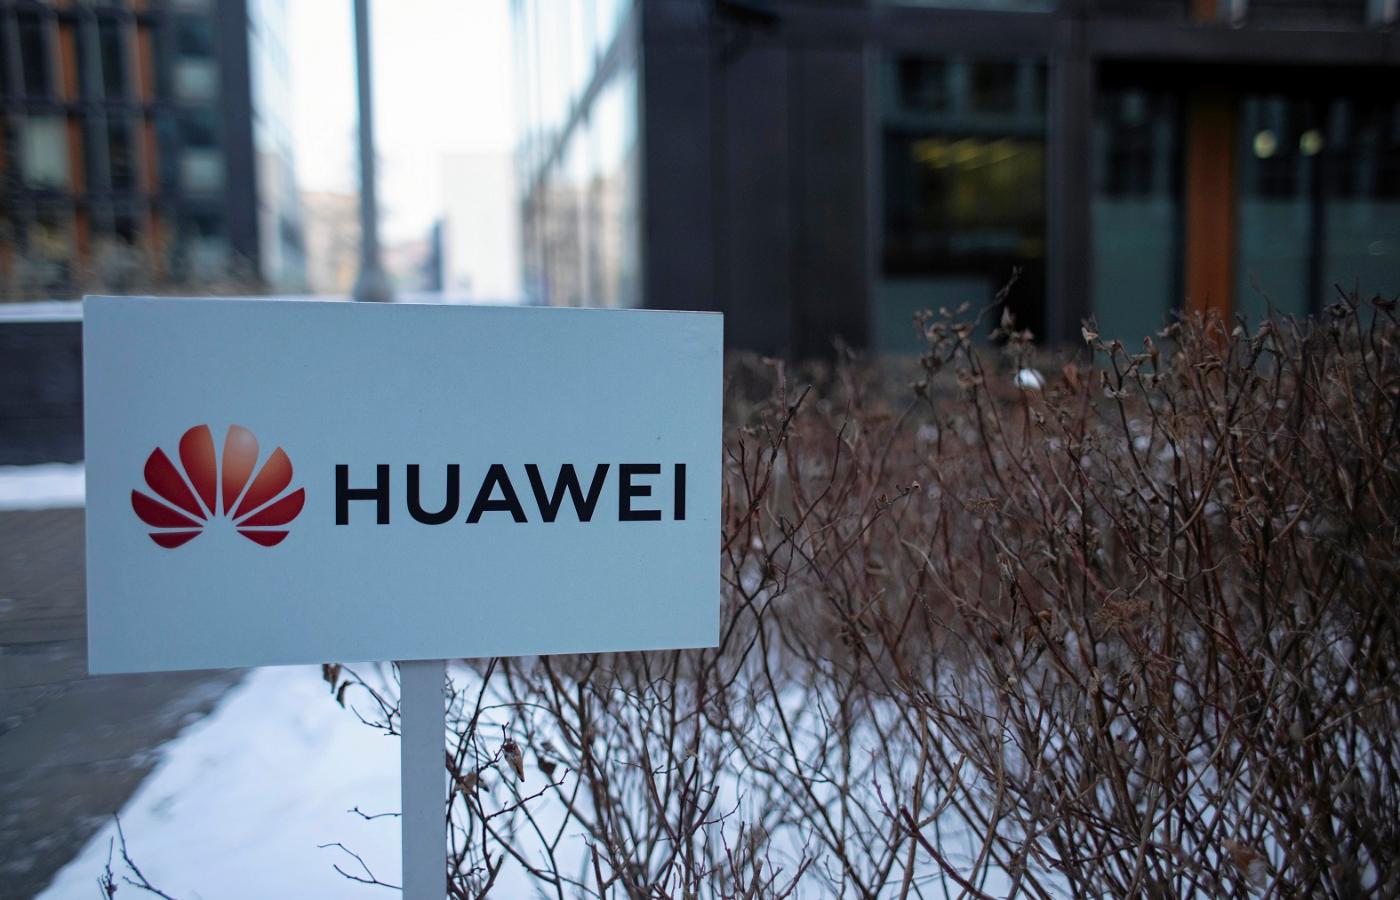 Siedziba firmy Huawei w Warszawie